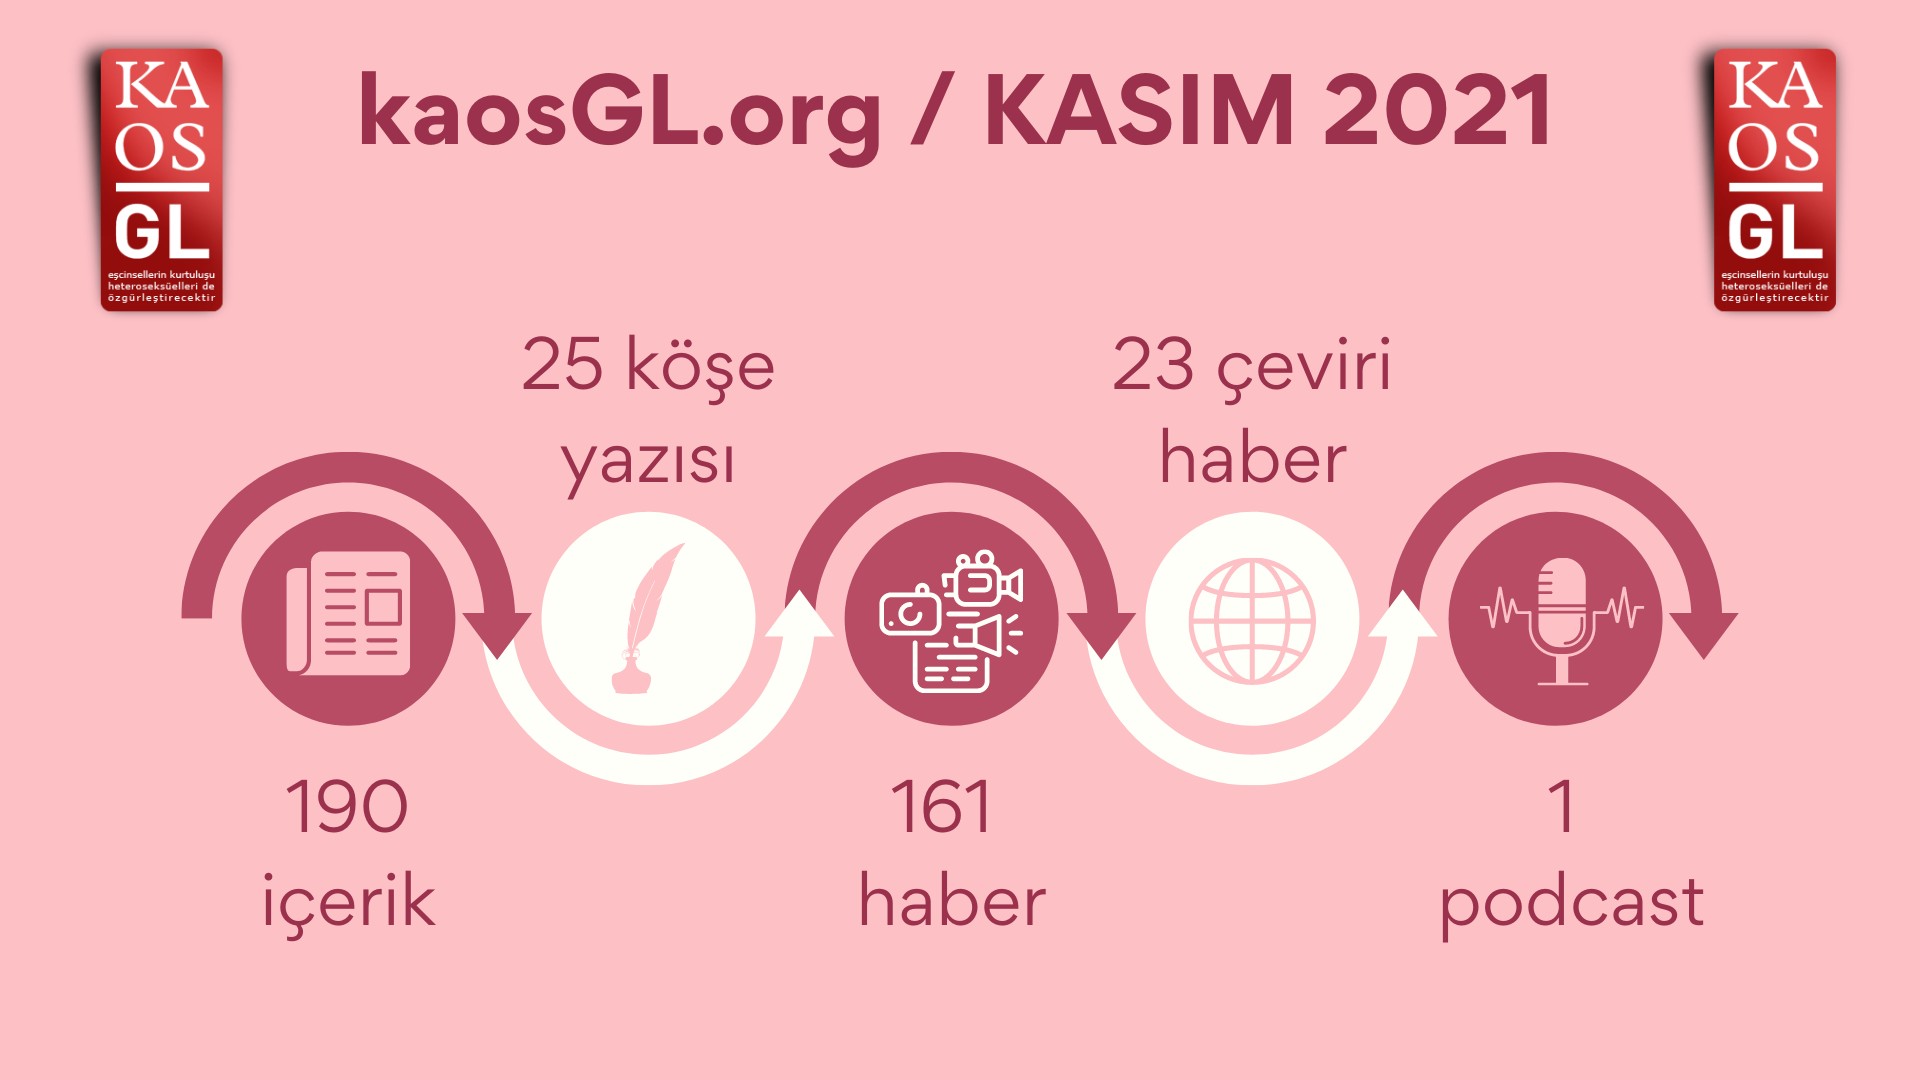 KaosGL.org, Kasım 2021’de ne yaptı? | Kaos GL - LGBTİ+ Haber Portalı